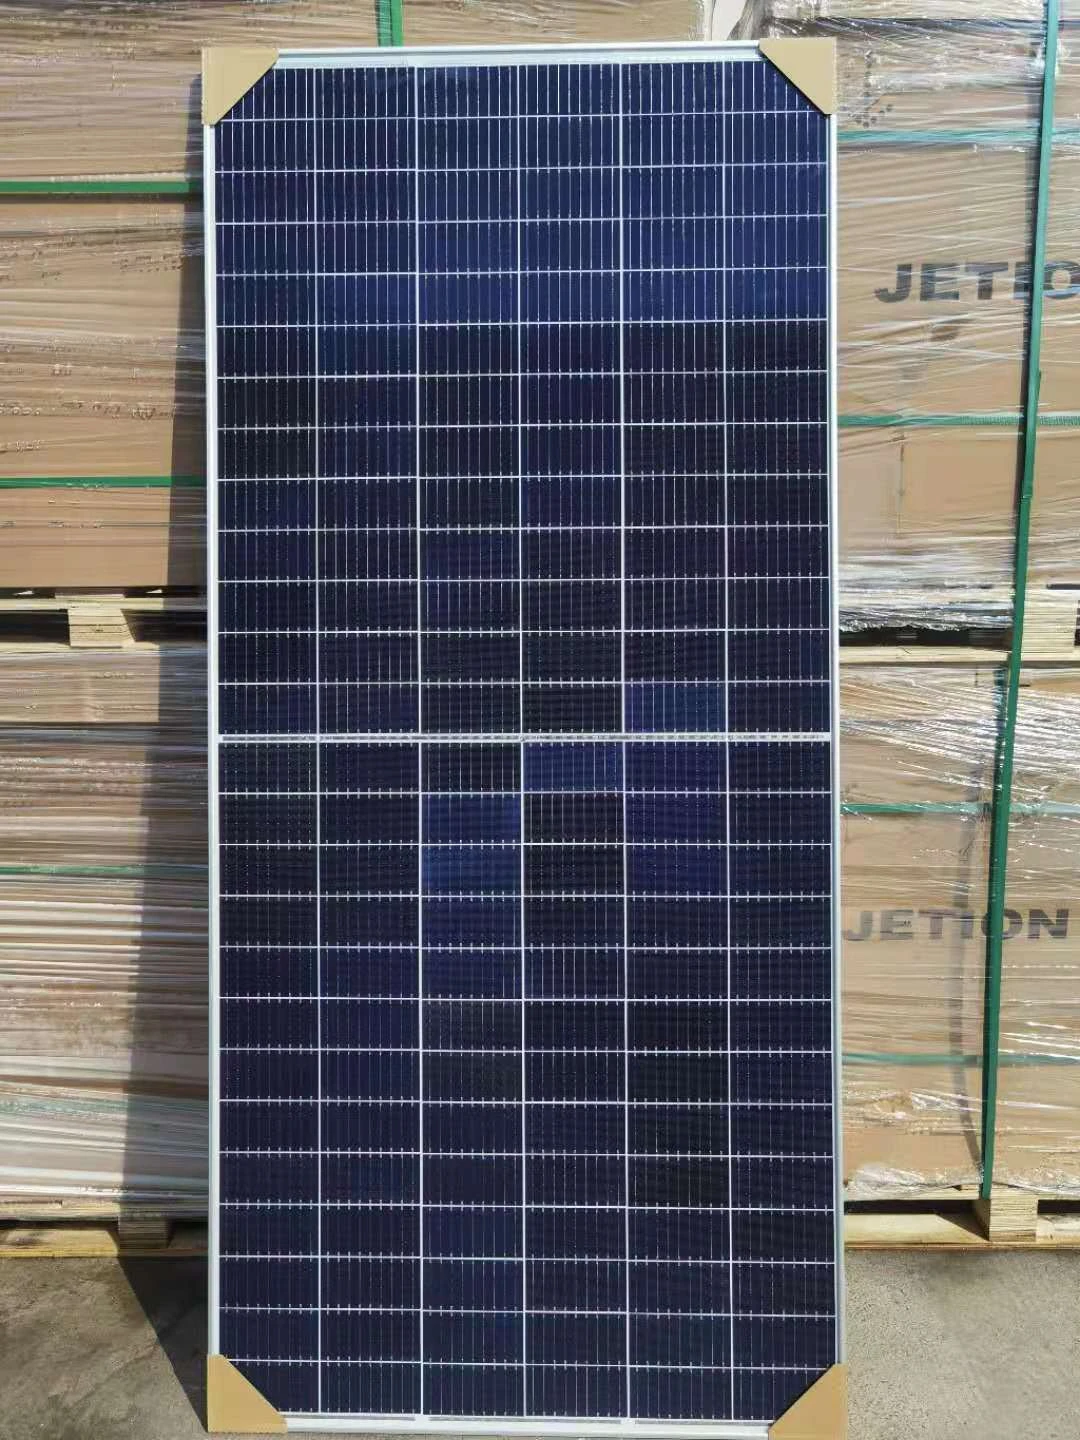 Risen Photovoltaic Solar Panel Price 480watt 490watt 500watt 505watt Mono Solar Panel for solar power systems